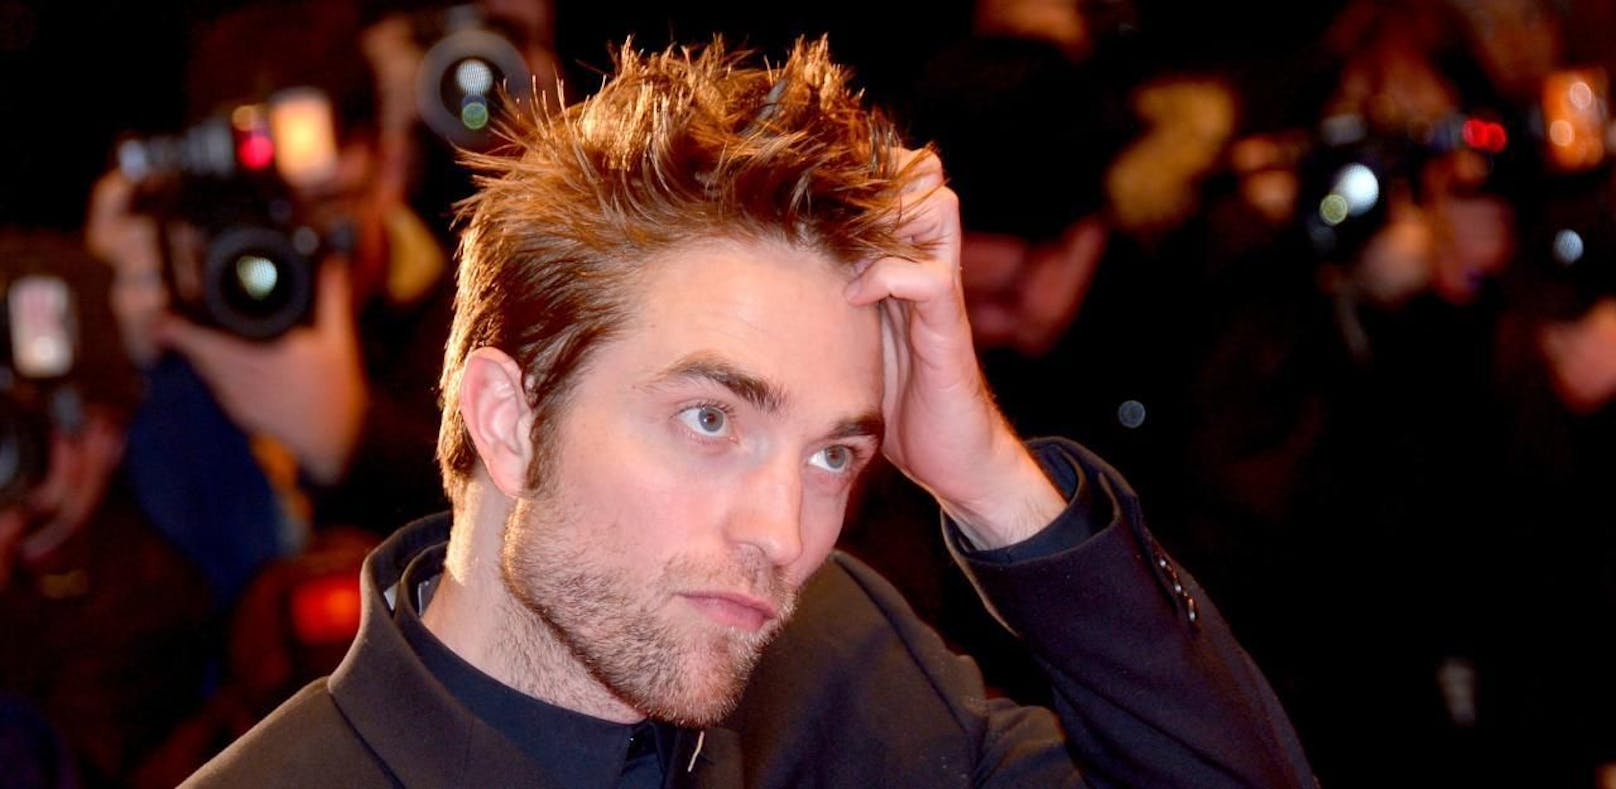 Buhrufe für Robert Pattinson in Berlin